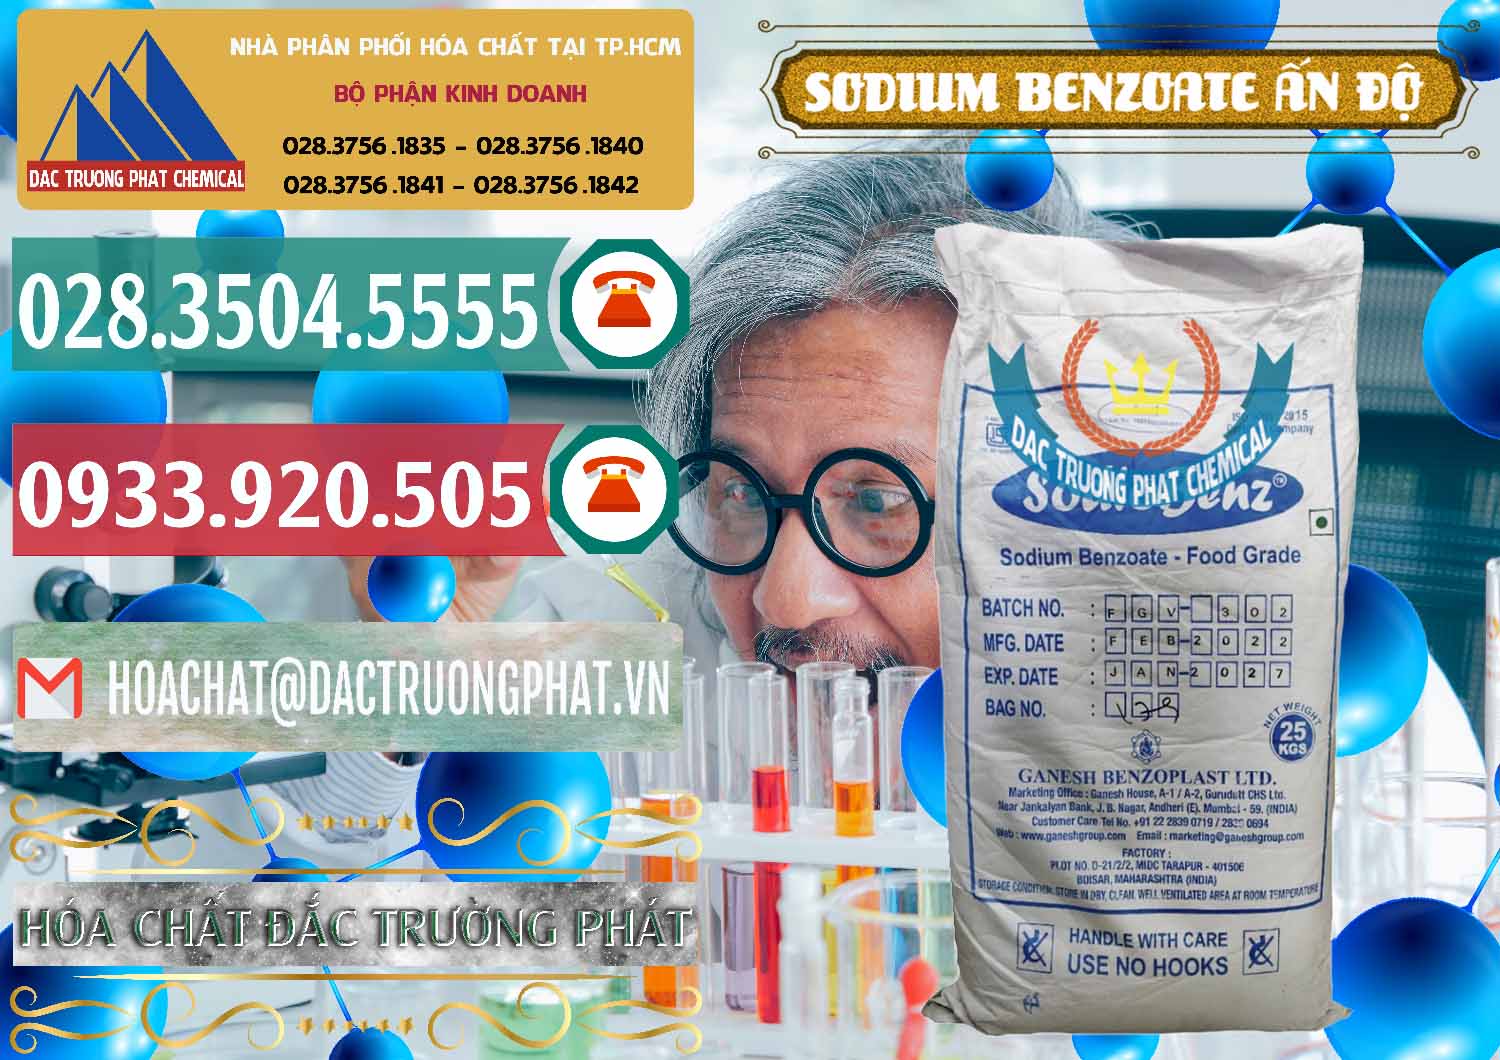 Nơi chuyên bán - phân phối Sodium Benzoate - Mốc Bột Ấn Độ India - 0361 - Nhập khẩu và phân phối hóa chất tại TP.HCM - muabanhoachat.vn